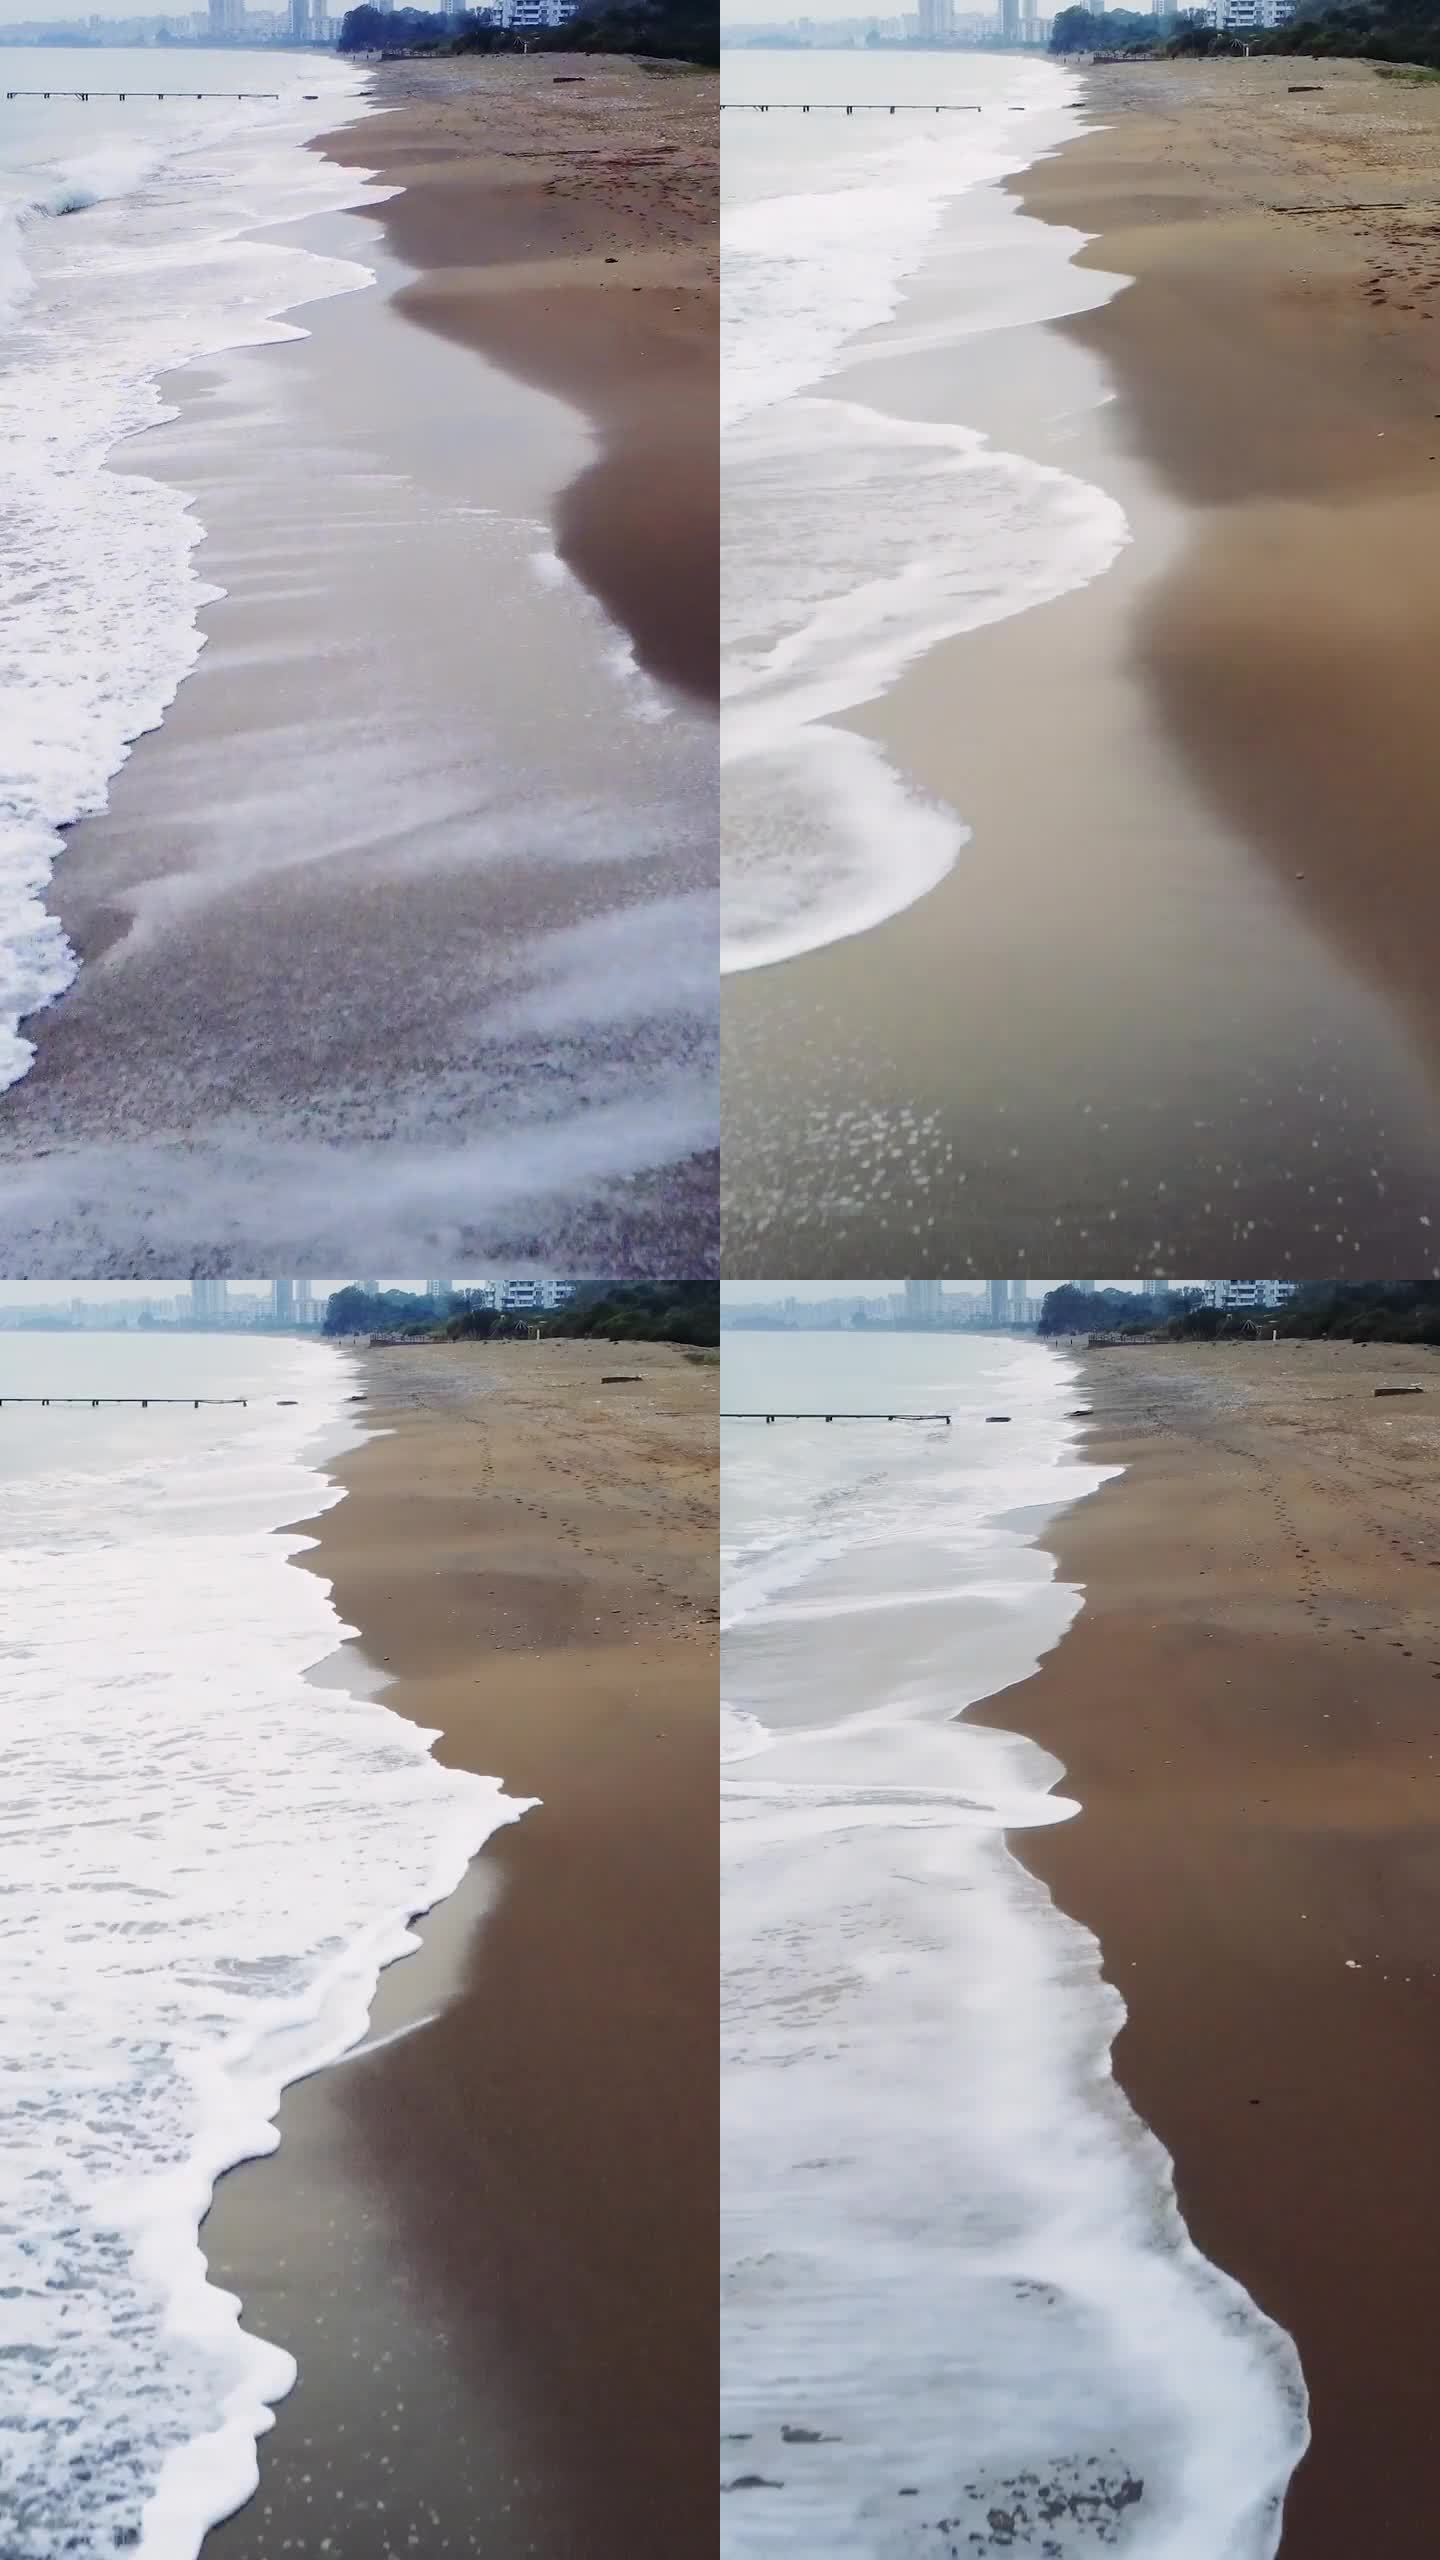 低空无人机沿着沙滩的冲浪线飞行。海岸线一直延伸到地平线，海浪拍打着海岸。在这宁静的景色中探索海洋和海